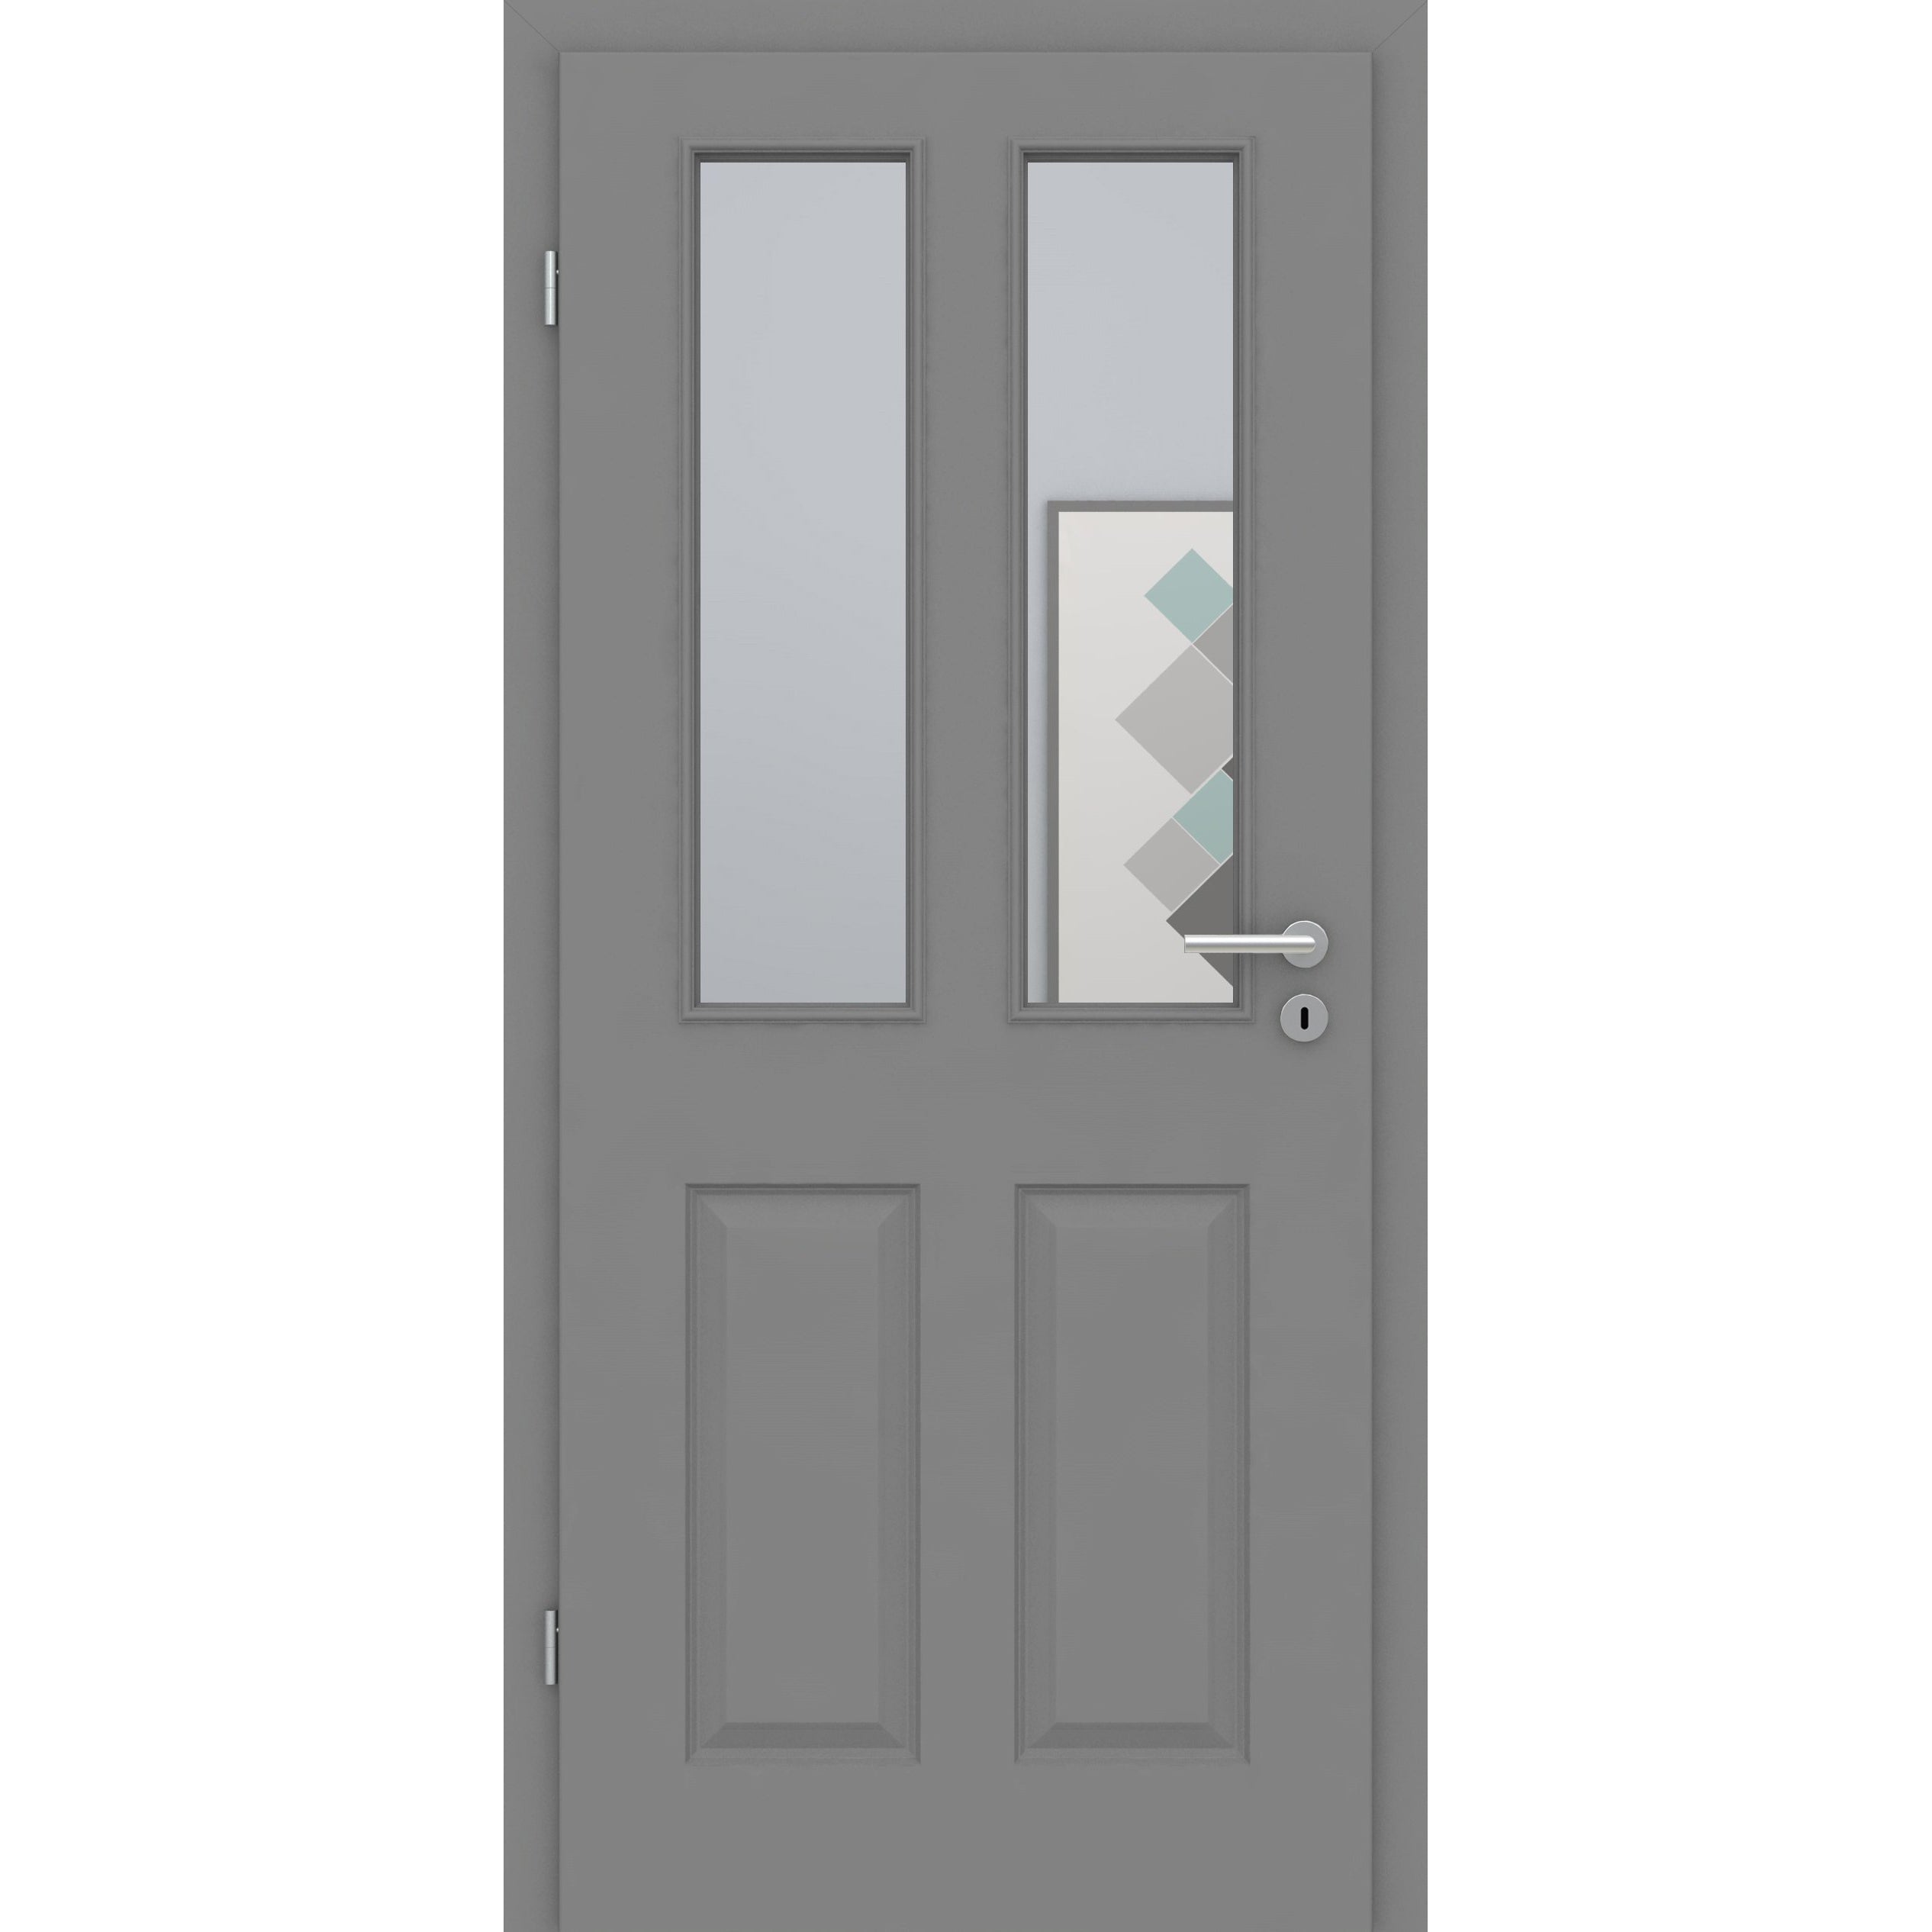 Zimmertür mit Lichtausschnitt grau 4 Kassetten Designkante - Modell Stiltür K47LA2